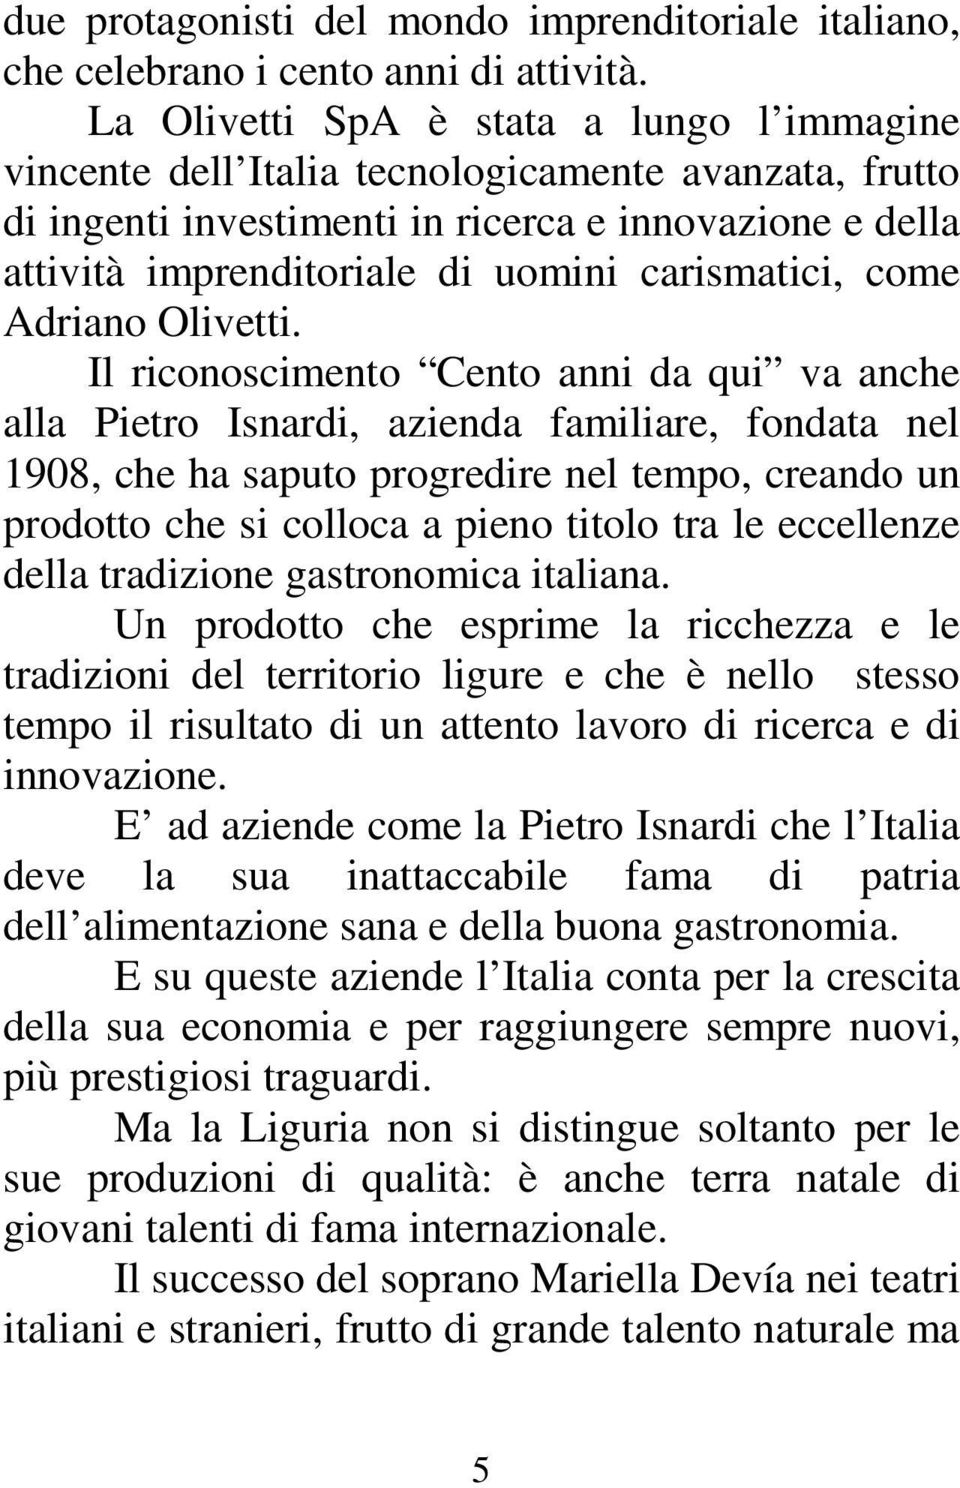 carismatici, come Adriano Olivetti.